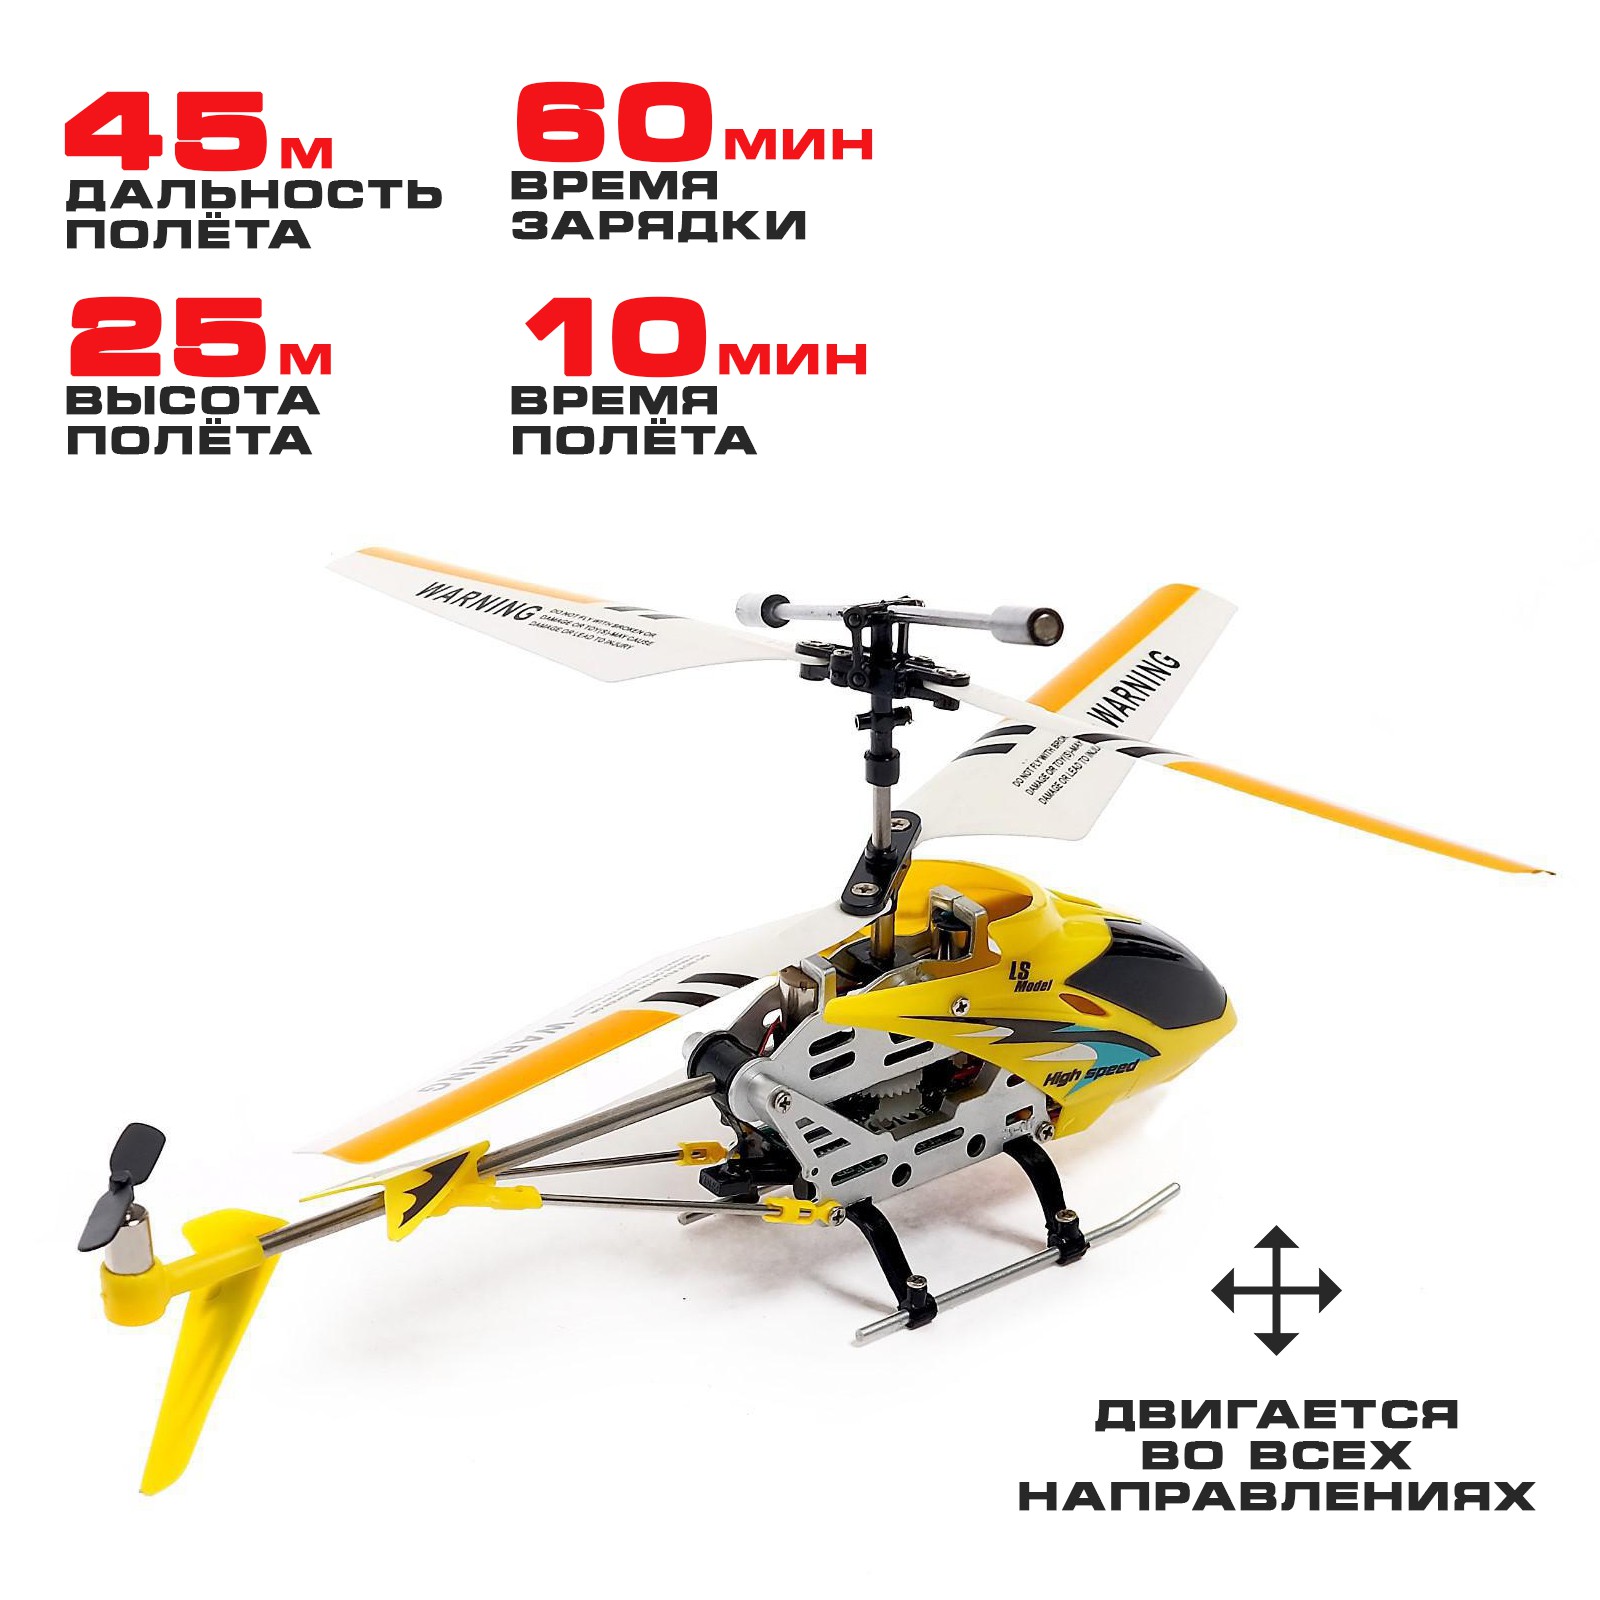 Вертолёт Автоград радиоуправляемый SKY с гироскопом цвет жёлтый - фото 3